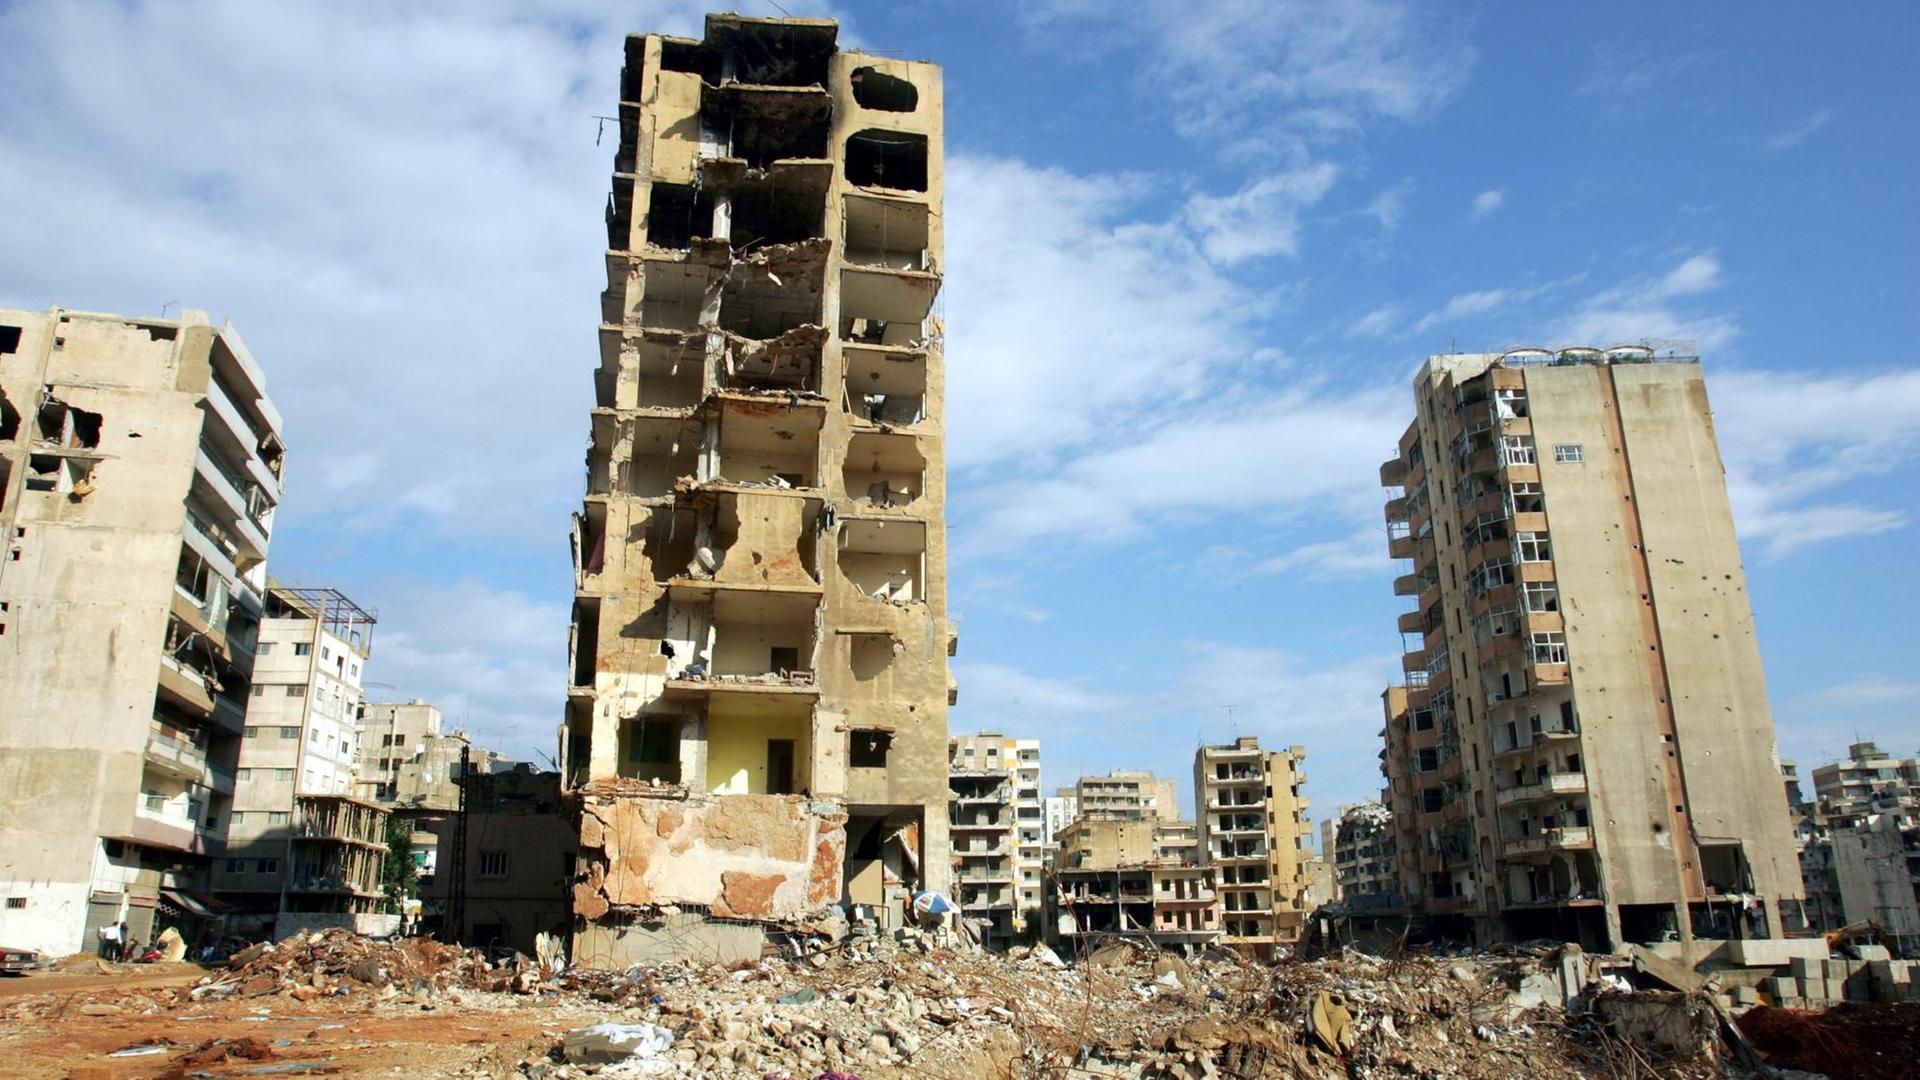 Trümmer und Ruinen von Hochhäusern in der libanesischen Hauptstadt Beirut, die am 13.08.2006 bei einem israelischen Bombenangriff zerstört wurden.